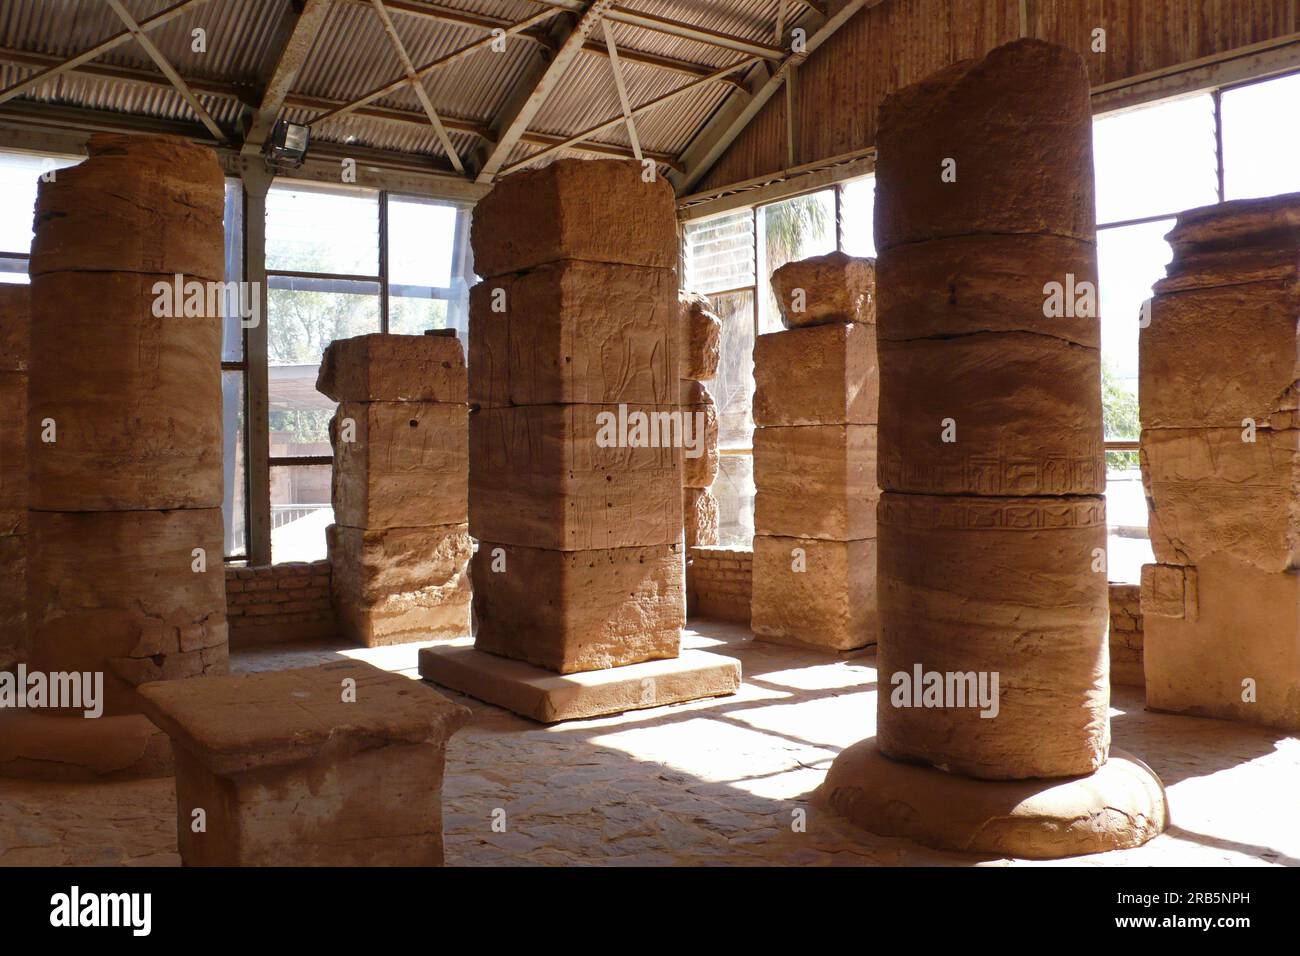 Musée archéologique à Khatoum. Nubia. Soudan. Afrique du Nord Banque D'Images